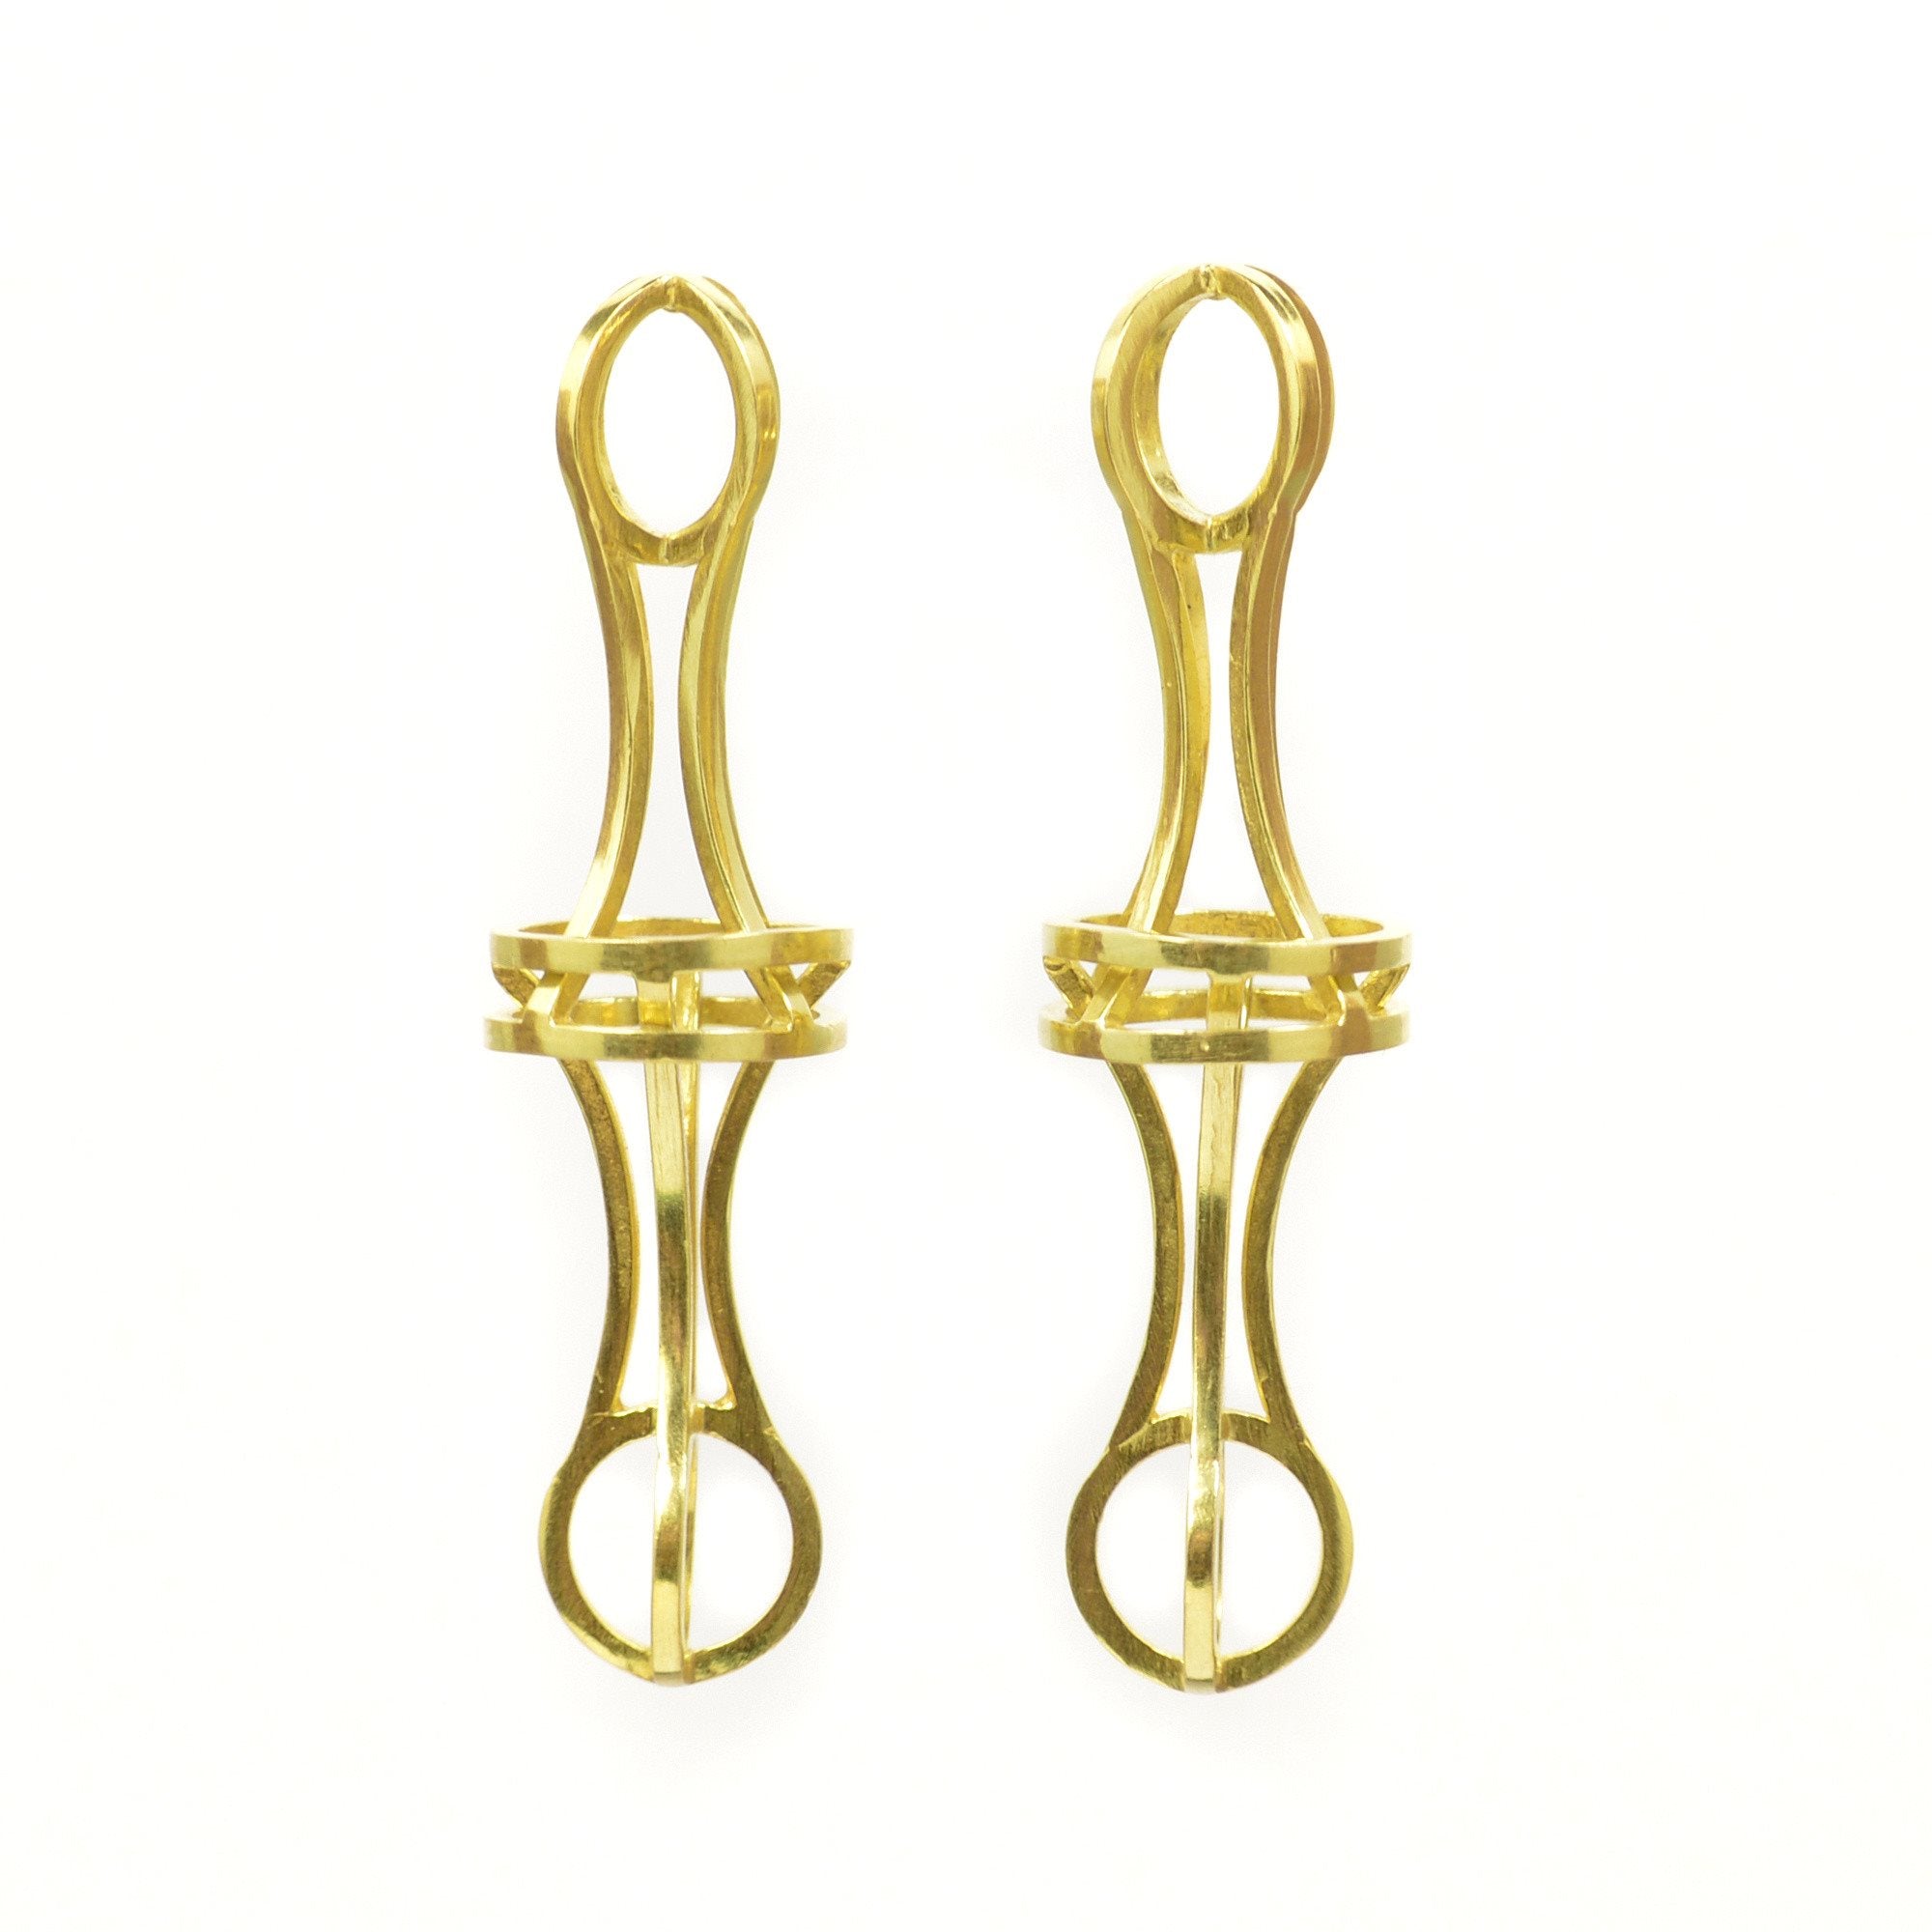 Vertebrae Link Earrings in 18k Gold